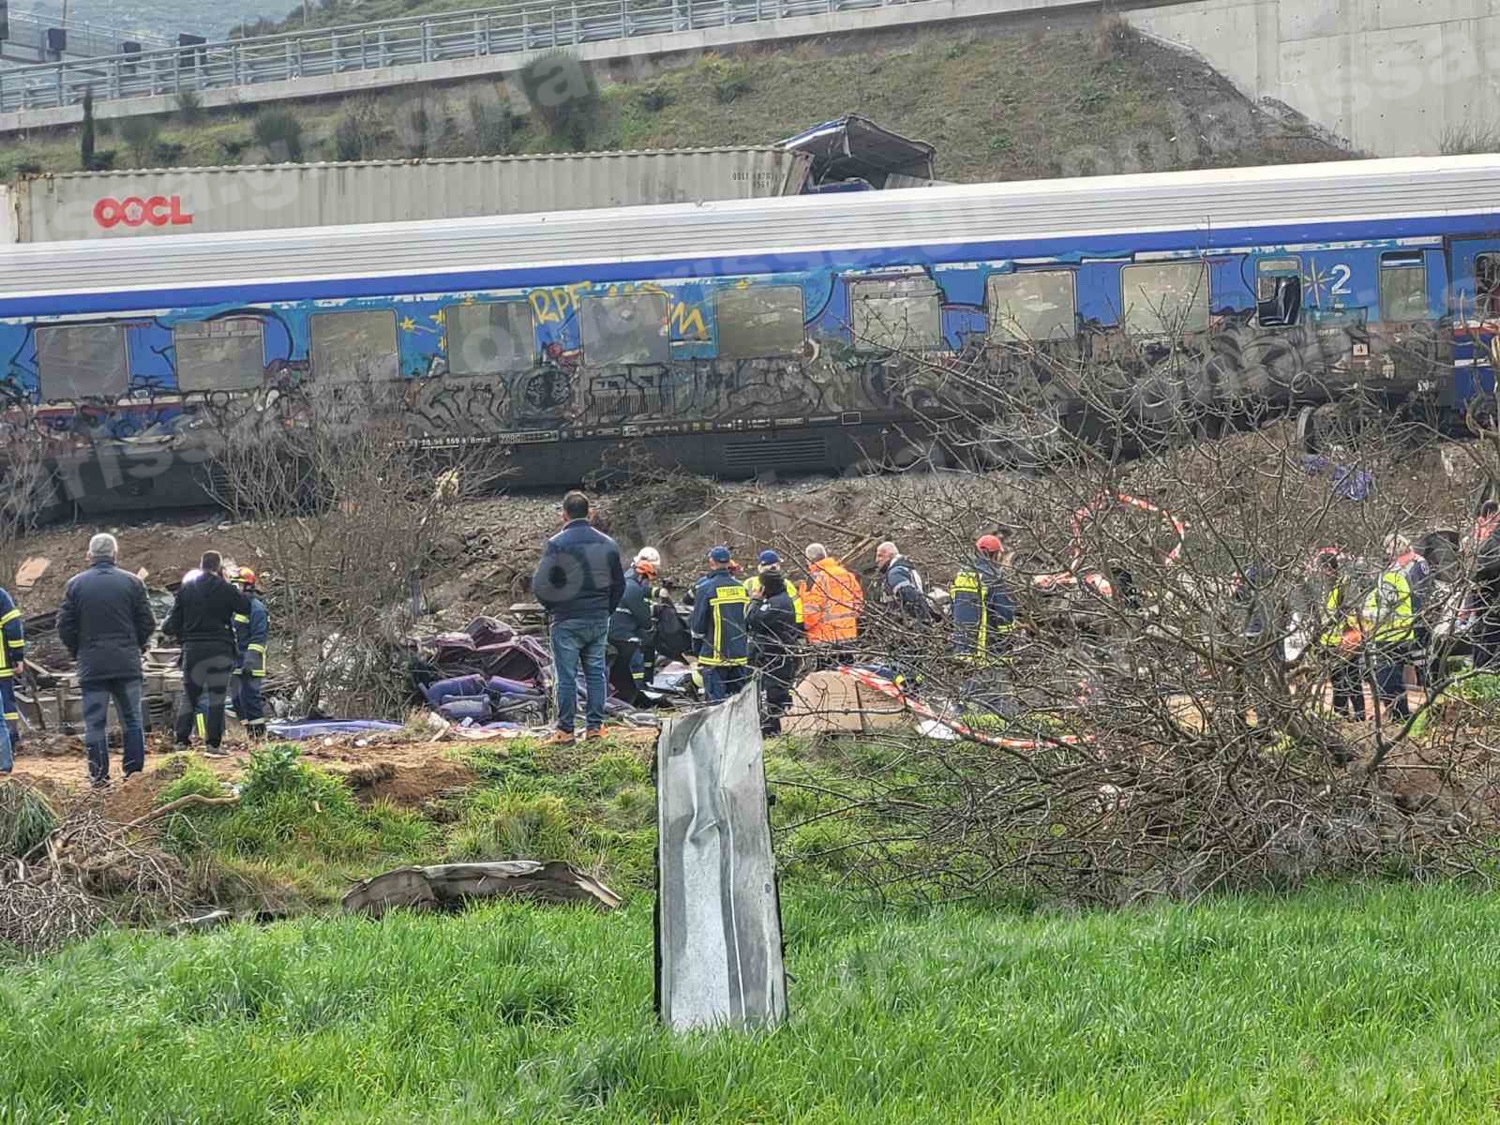 Σύγκρουση τρένων στα Τέμπη: Αντιμέτωποι ακόμα και με ισόβια οι υπεύθυνοι για το πολύνεκρο δυστύχημα